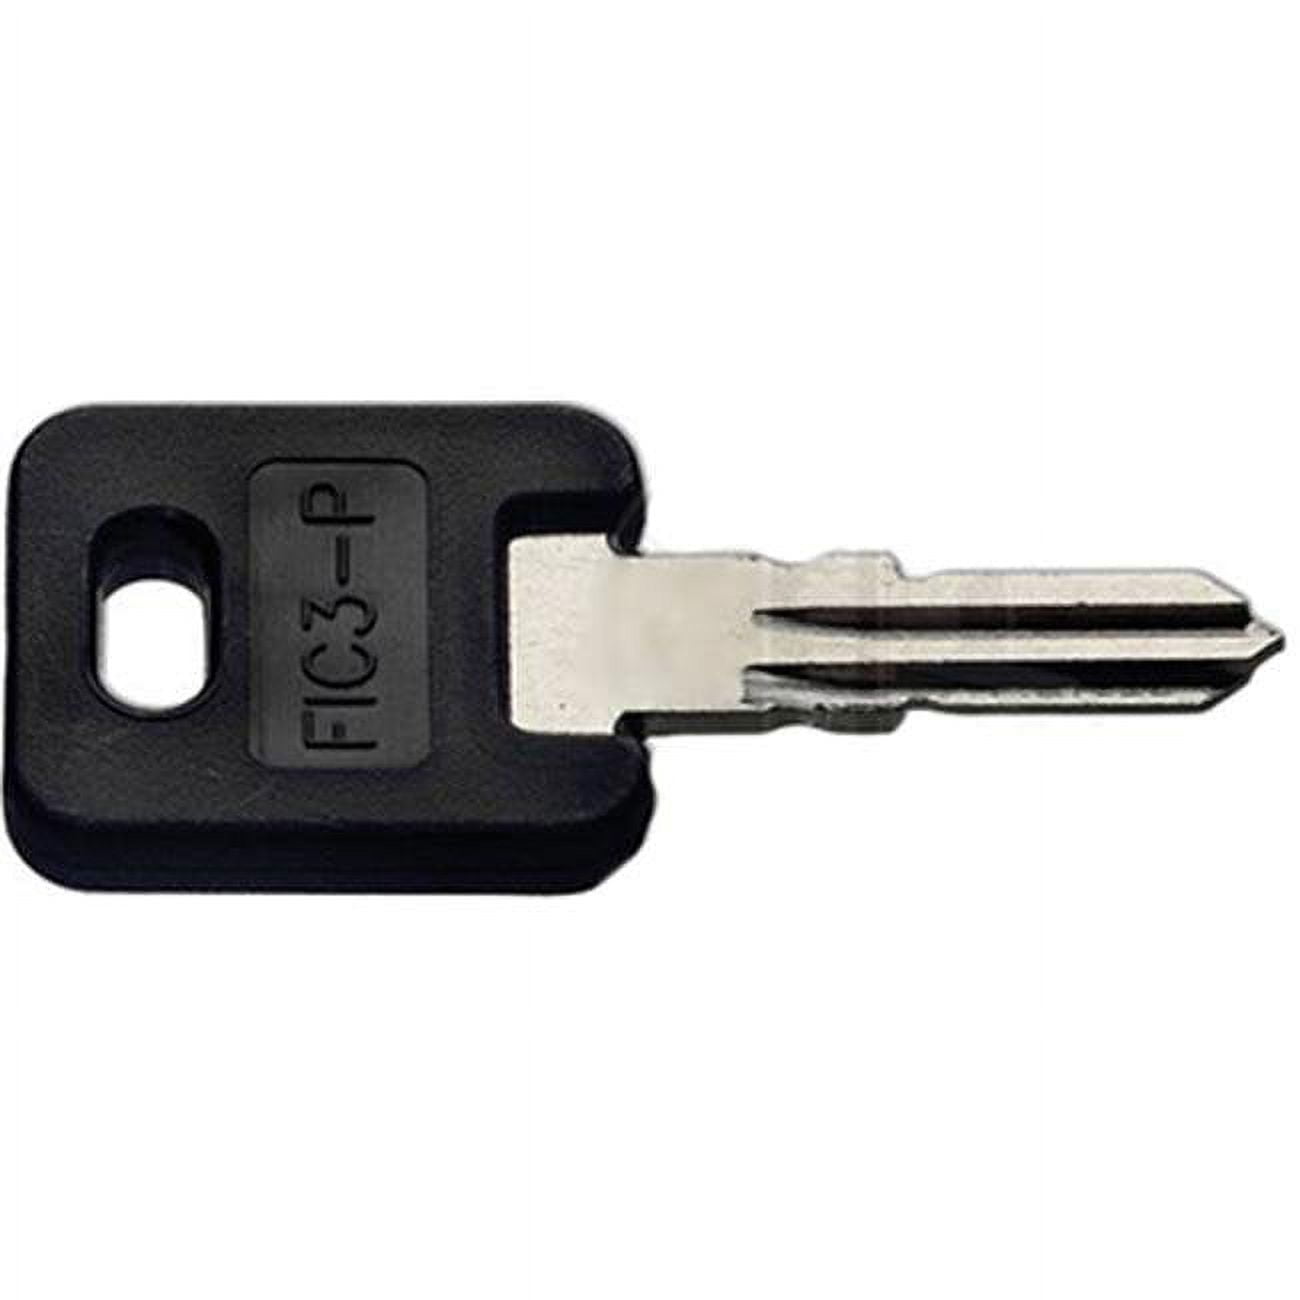 Fic3-p Black Plastic Head Vehicle Key - Pack Of 5